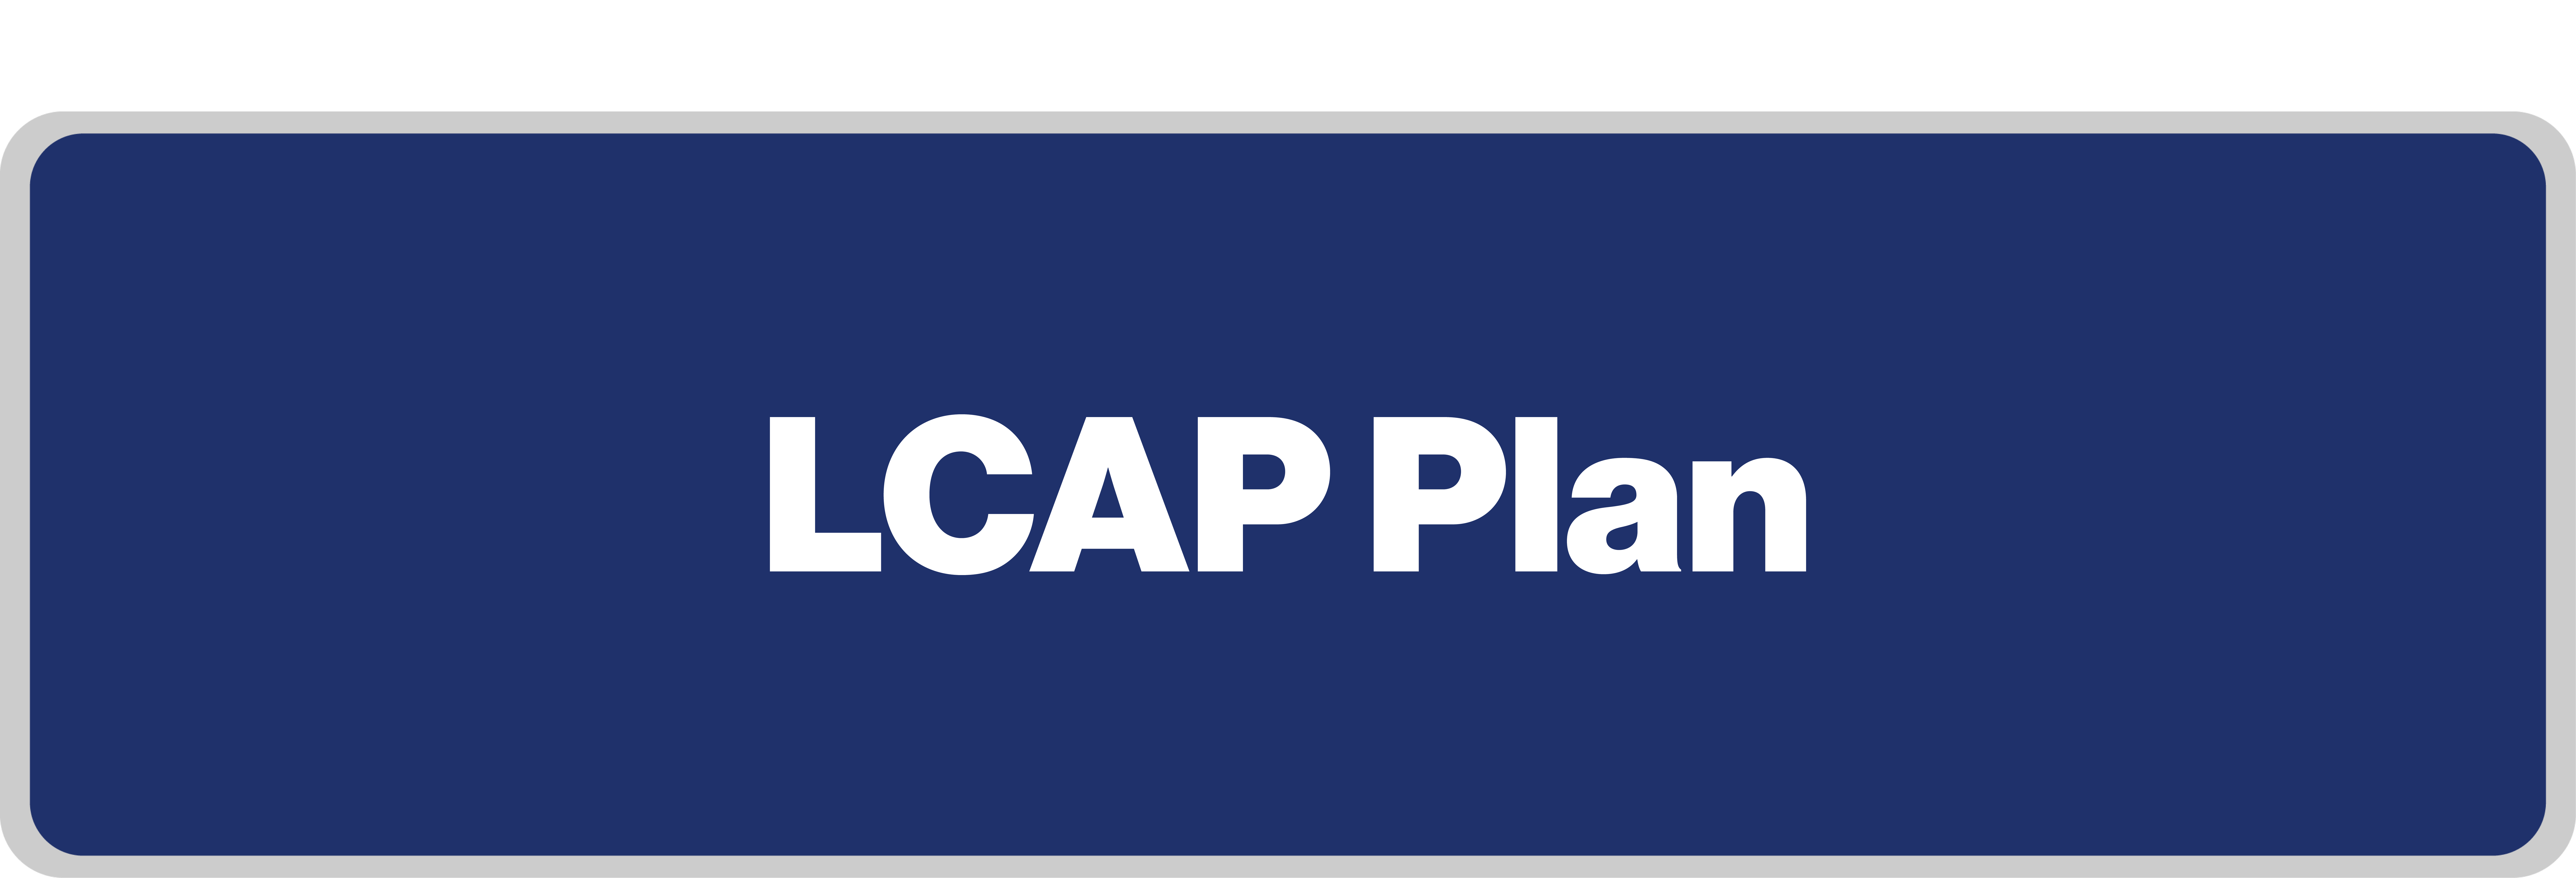 LCAP Plan